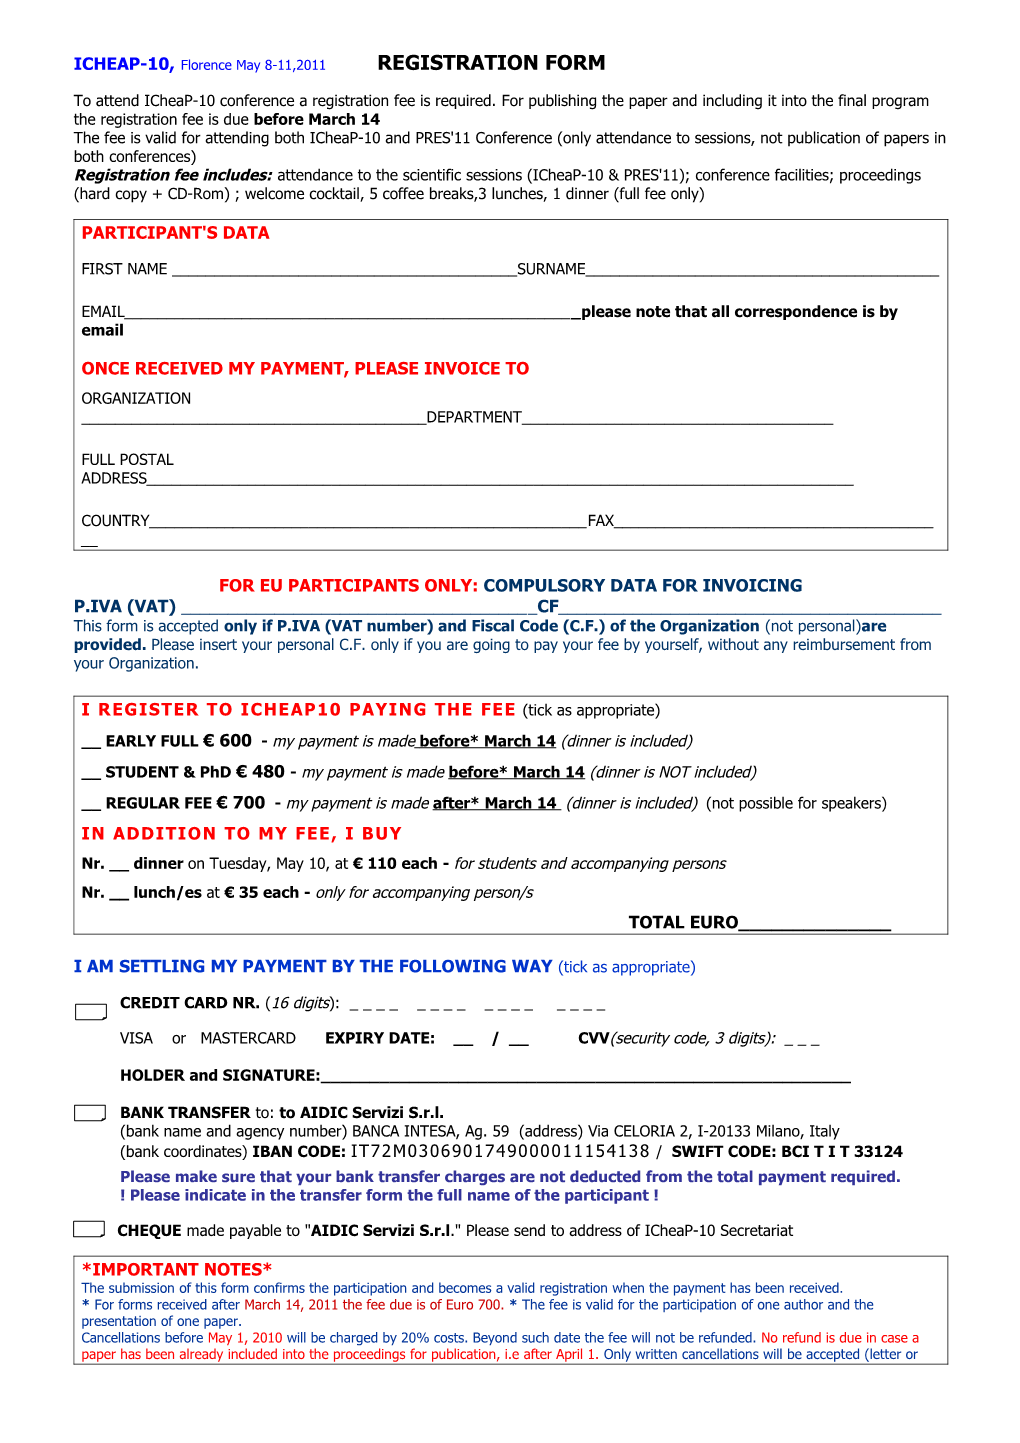 Icheap-10 Registration Form